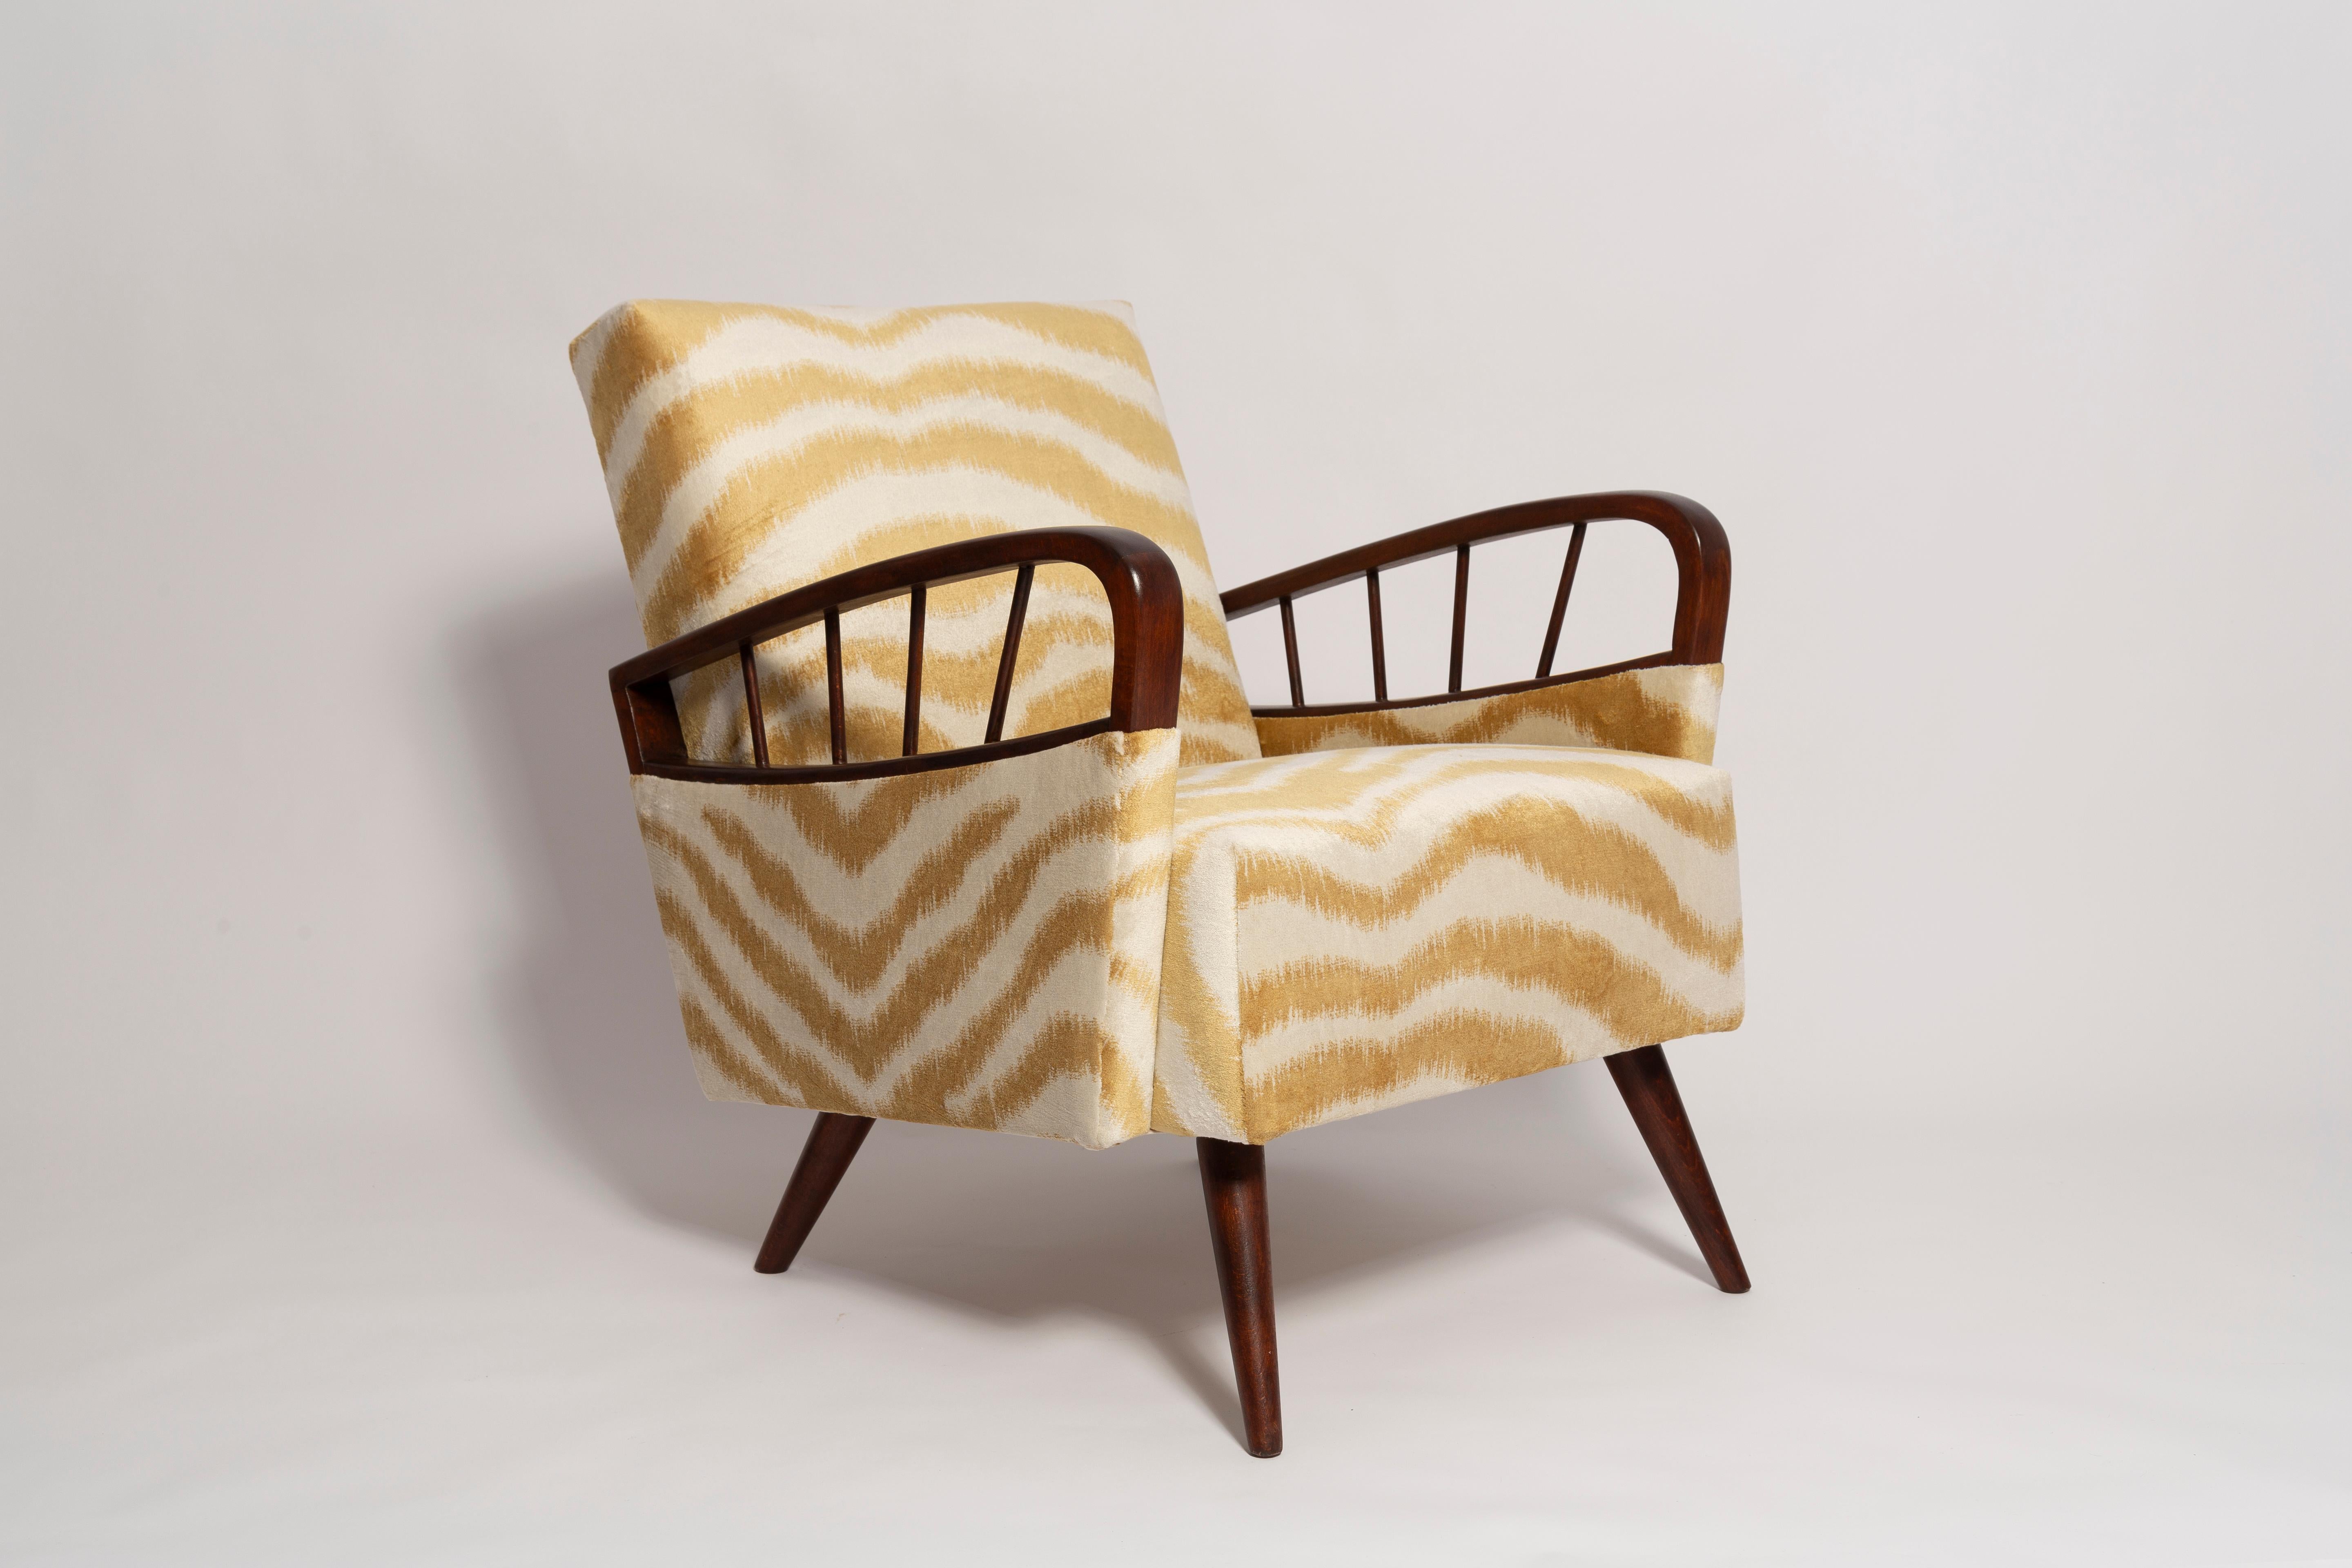 Der Sessel wurde in den 1960er Jahren in der Möbelfabrik Gosciecinska aus massivem Buchenholz hergestellt. Dieser Sessel gilt als einer der besten polnischen Sesseldesigns aus der vergangenen Zeit.

Der Sessel ist gründlich renoviert worden. Die